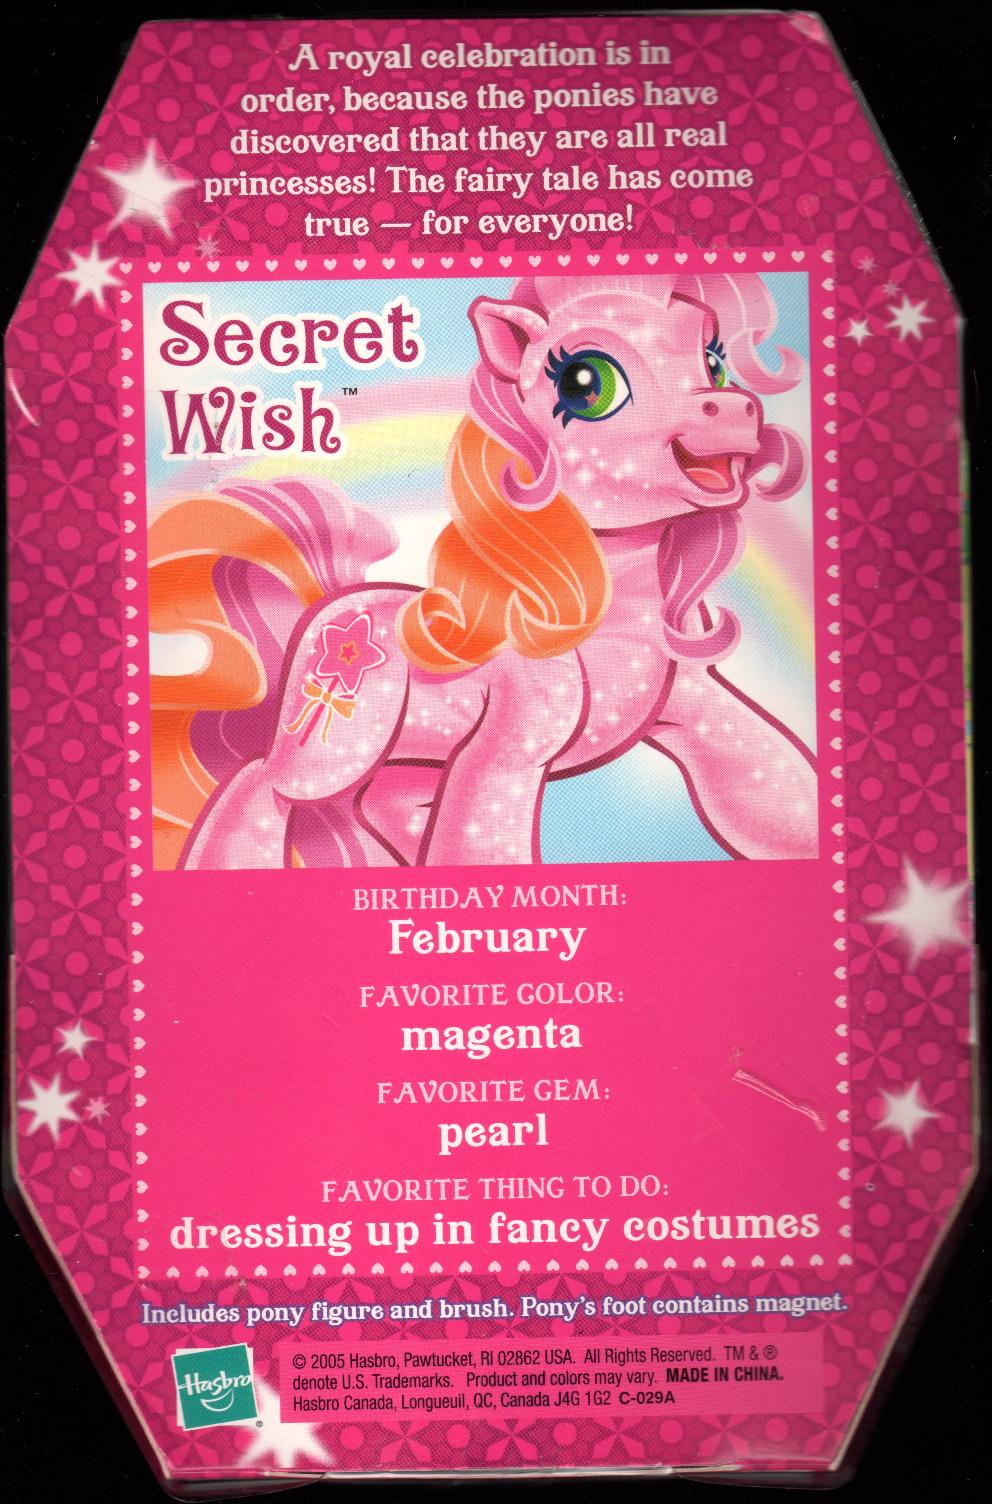 Secret Wish's backcard